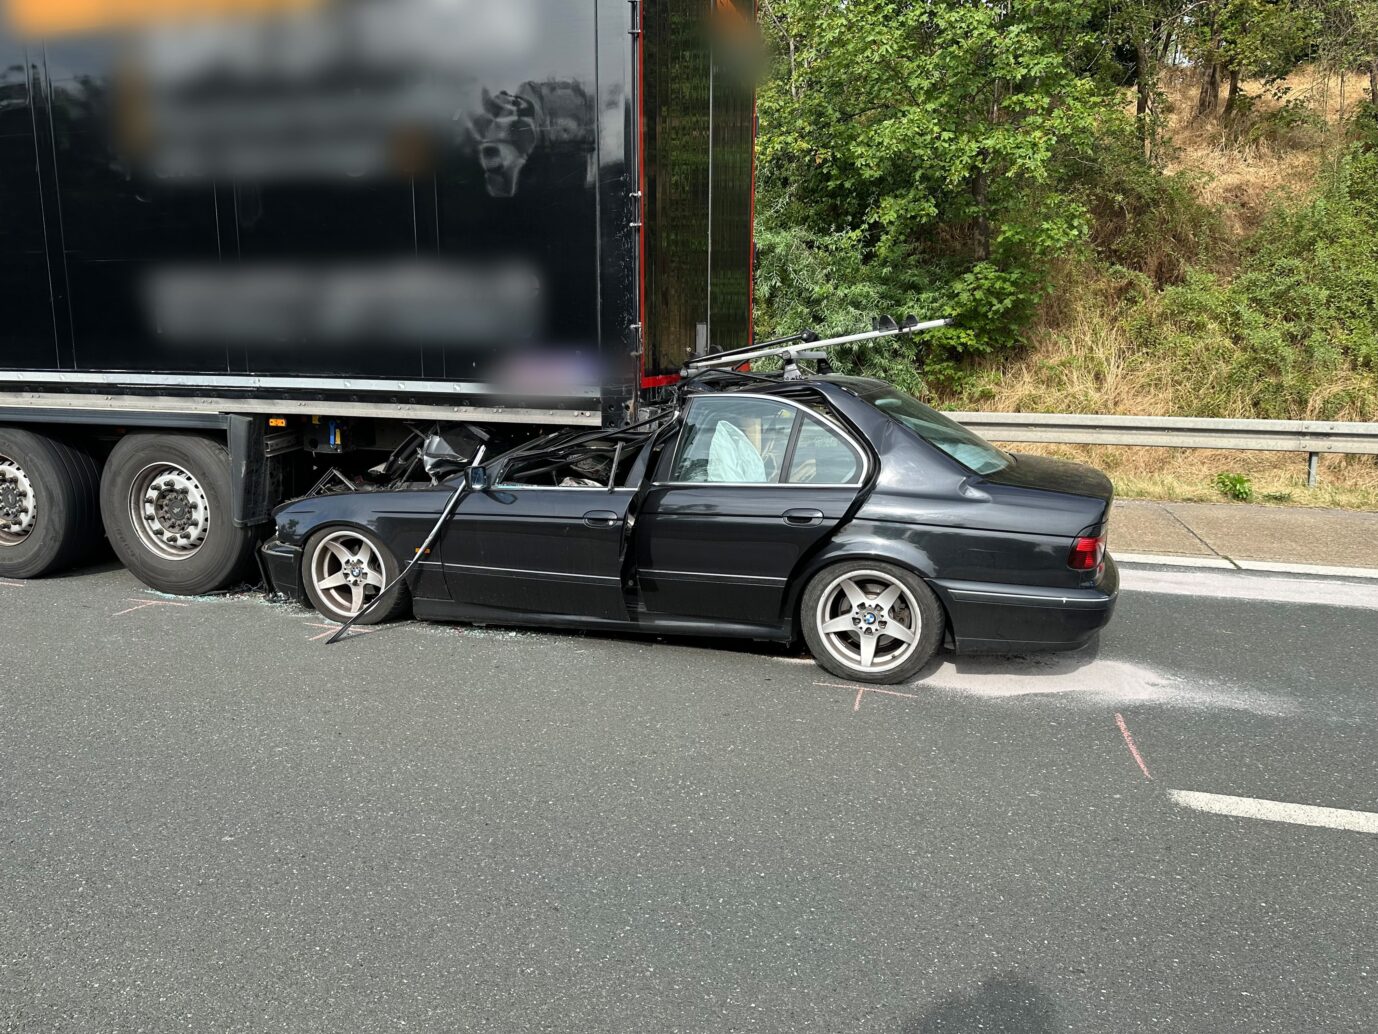 Ein Auto hat sich bei einem Auffahrunfall auf der A73 bei Nürnberg unter einen Lastwagen geschoben. Der Fahrer zog sich schwere Verletzungen zu. (zu dpa: "Autofahrer in Stau auf A73 verletzt - Blockade von Letzter Generation") - Usage only in Germany